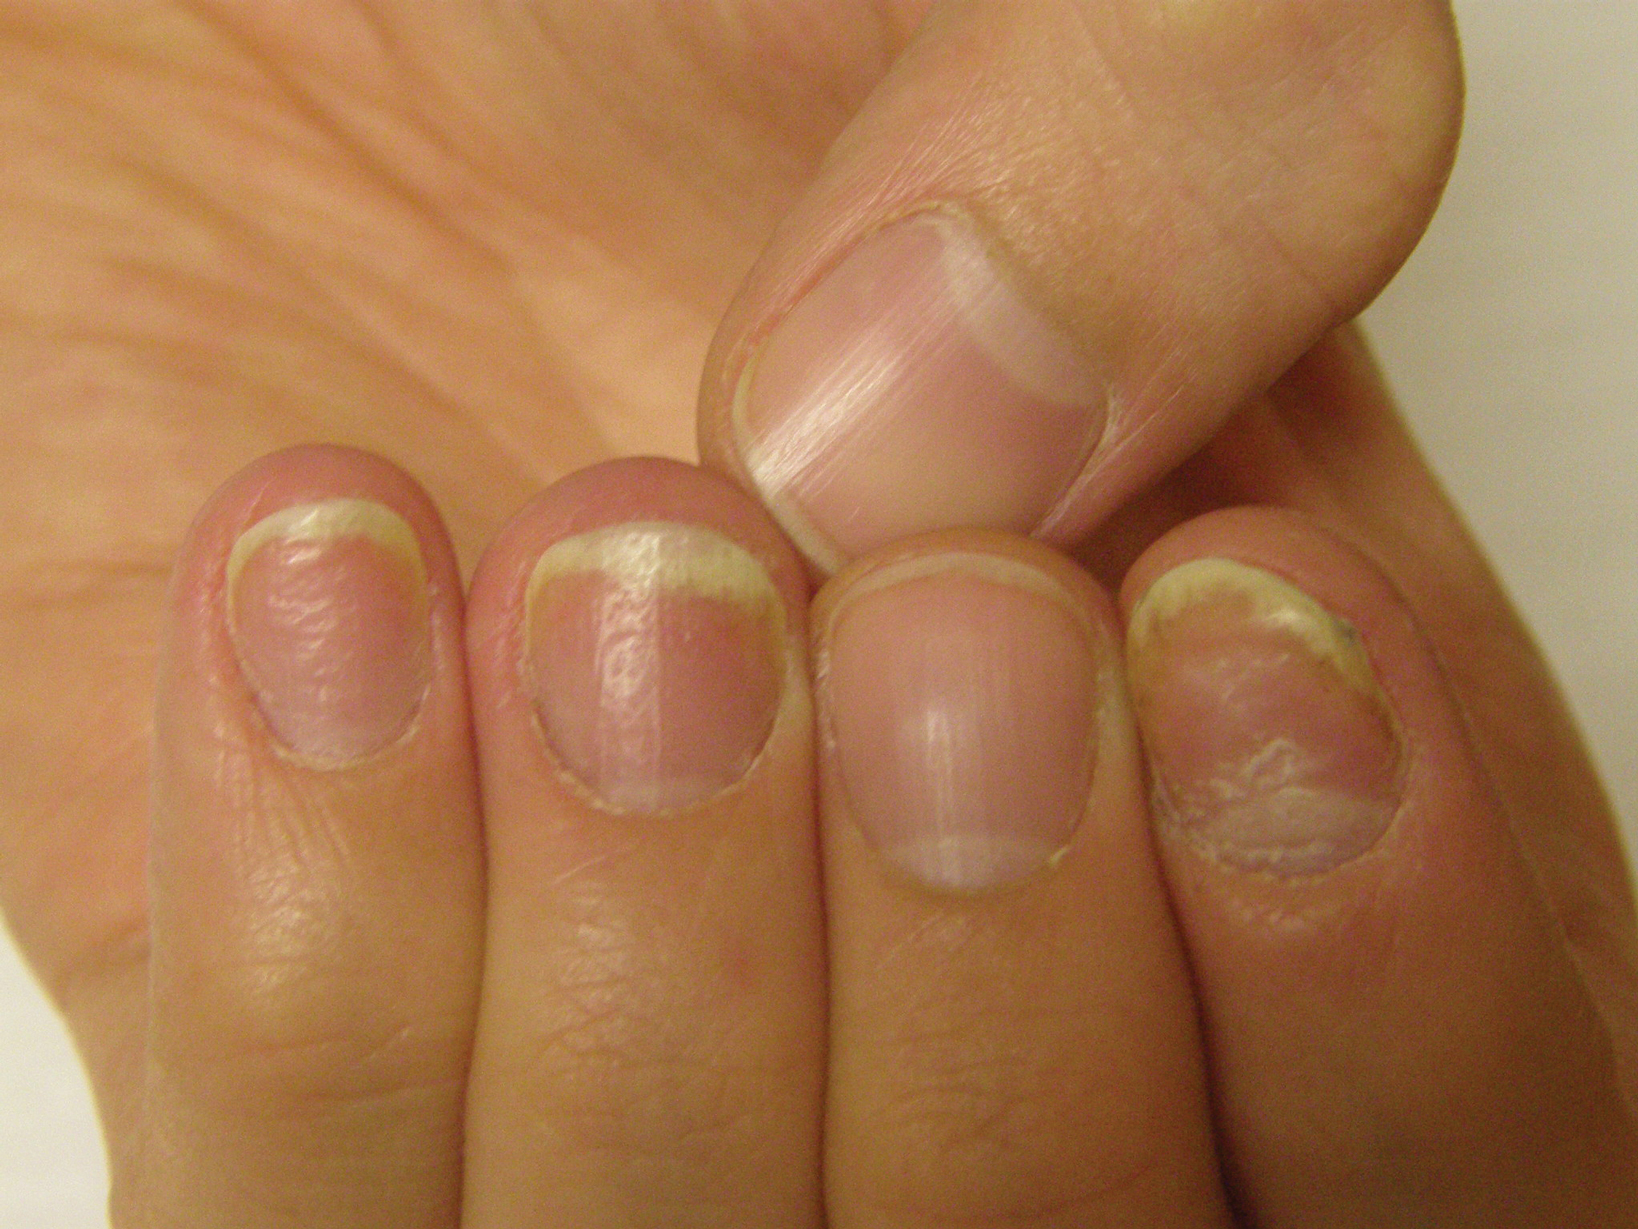 nail psoriasis causes and treatment vörös foltok jelennek meg az arcon és eltűnnek